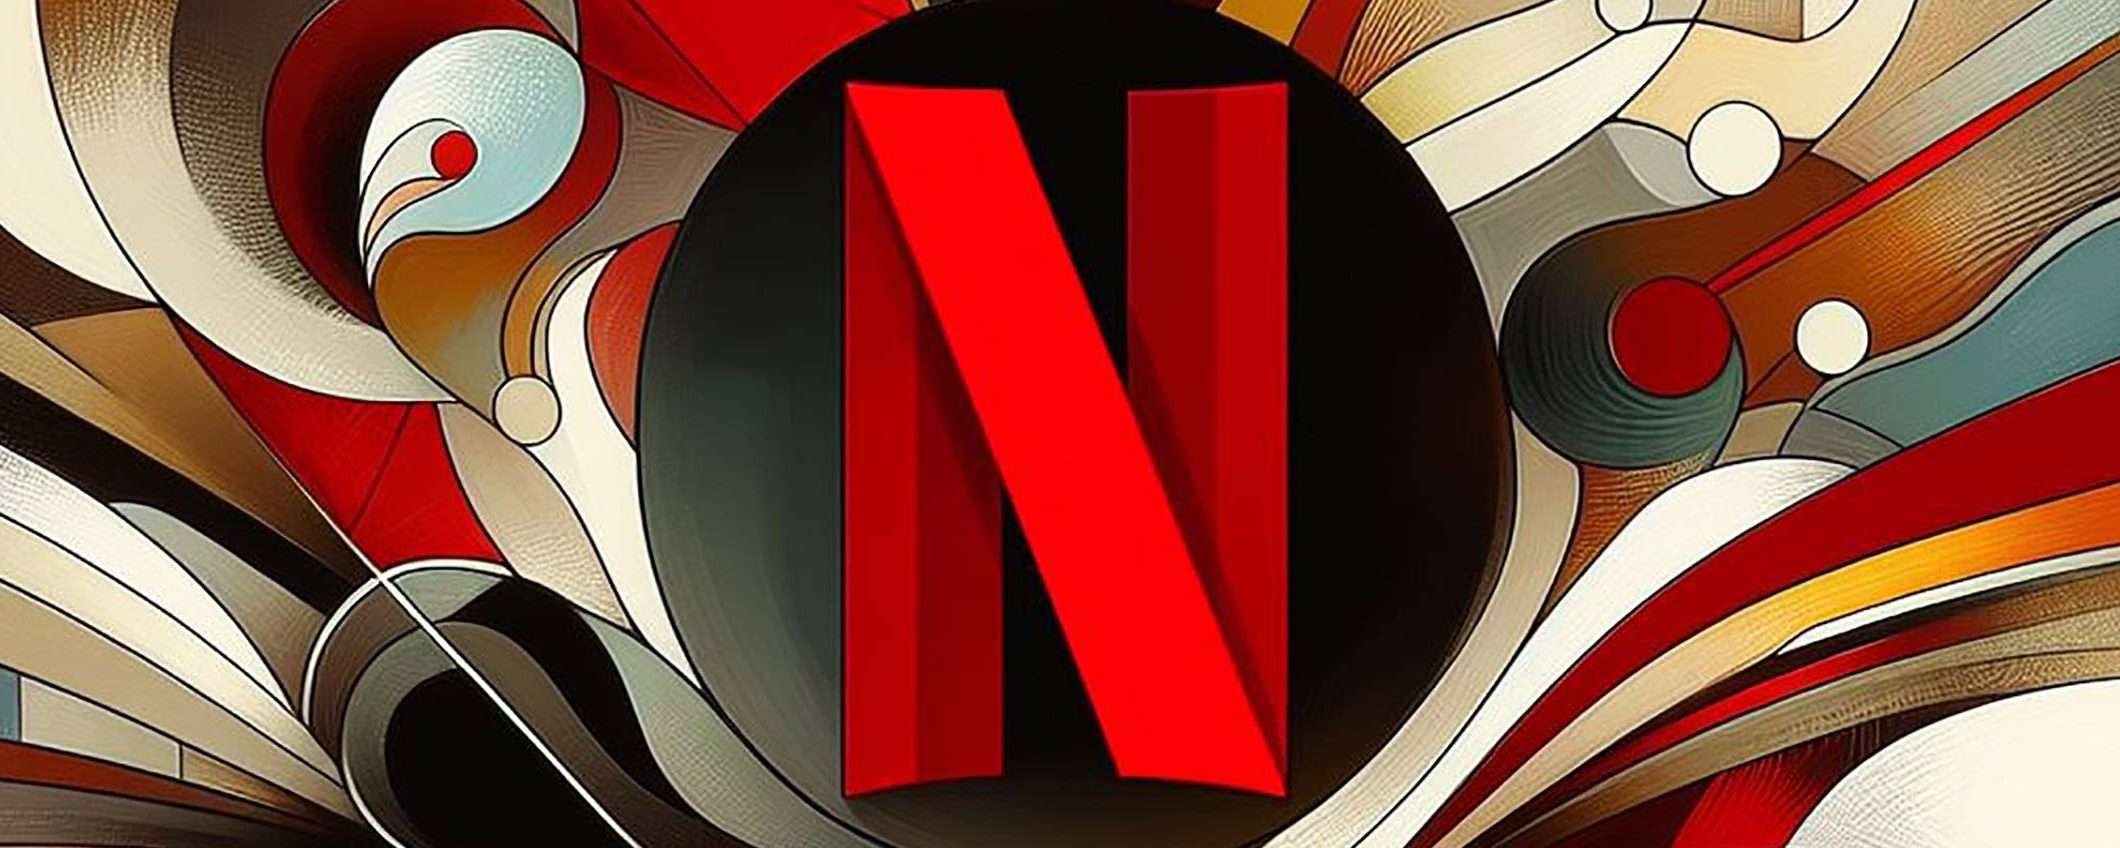 Netflix anticipa l'arrivo di nuovi aumenti